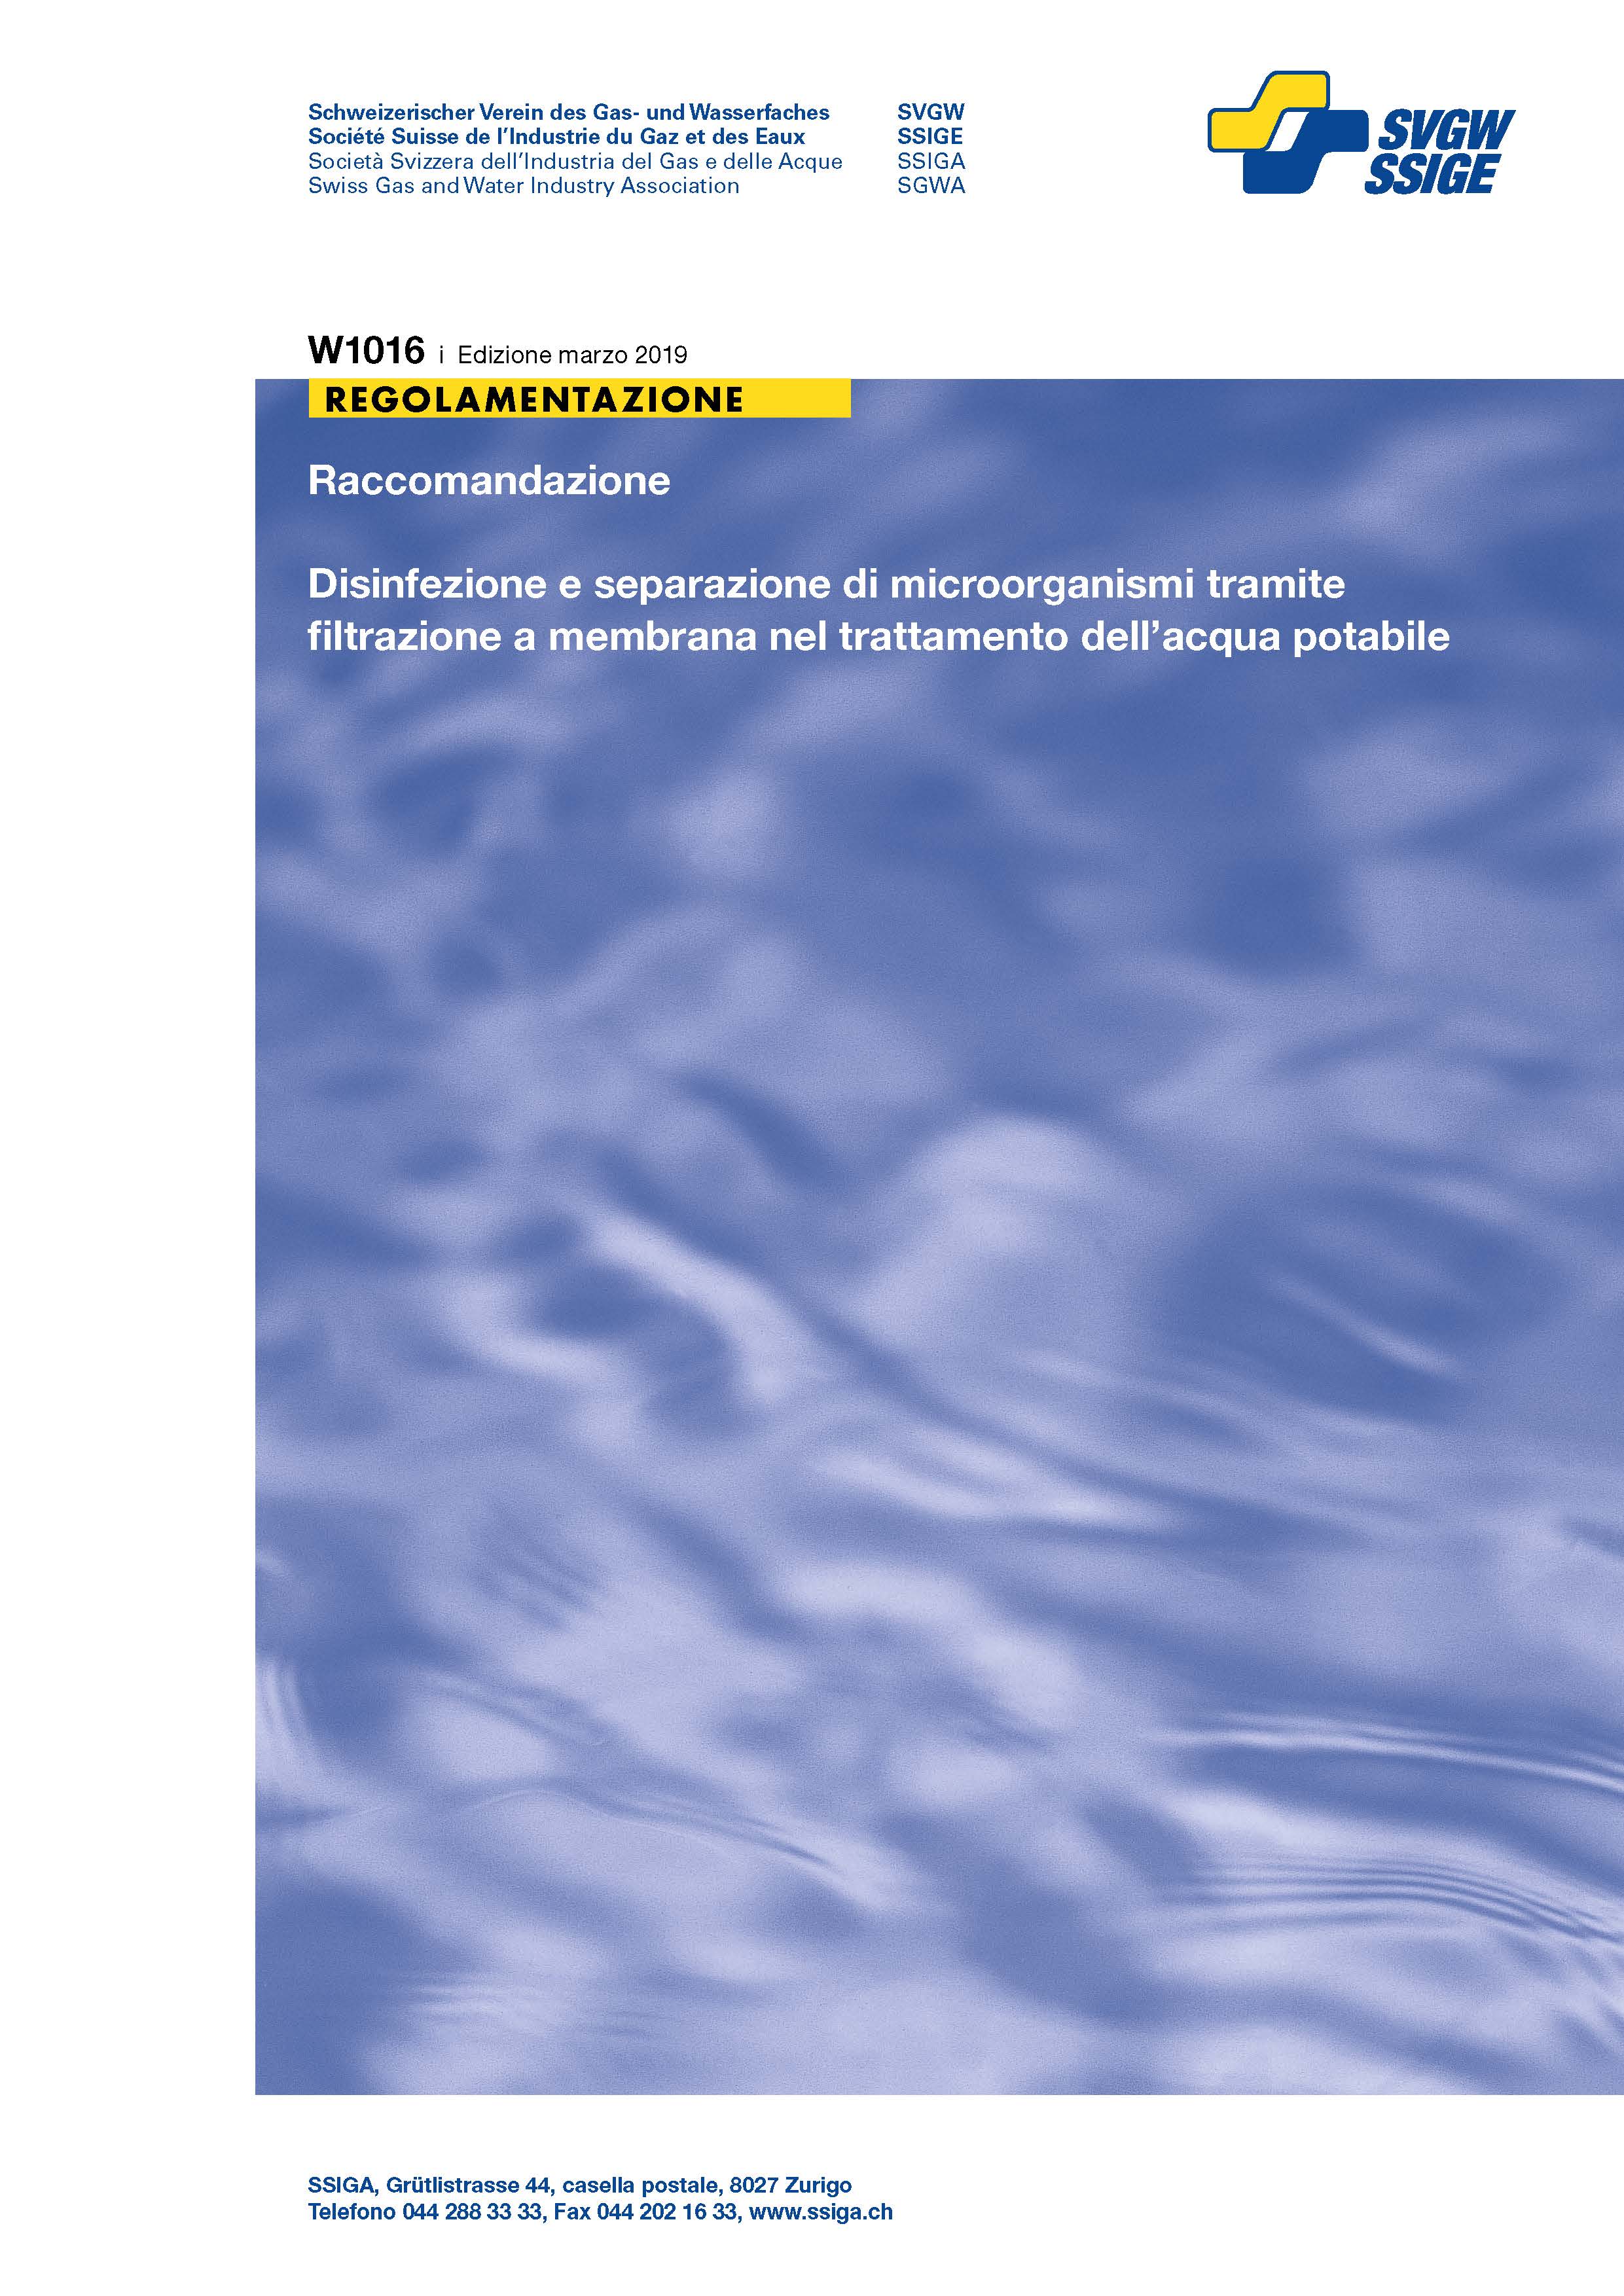 W1016 i Raccomandazione; Disinfezione e separazione di microorganismi tramite filtrazione a membrana nel trattamento dell'acqua potabile (2)